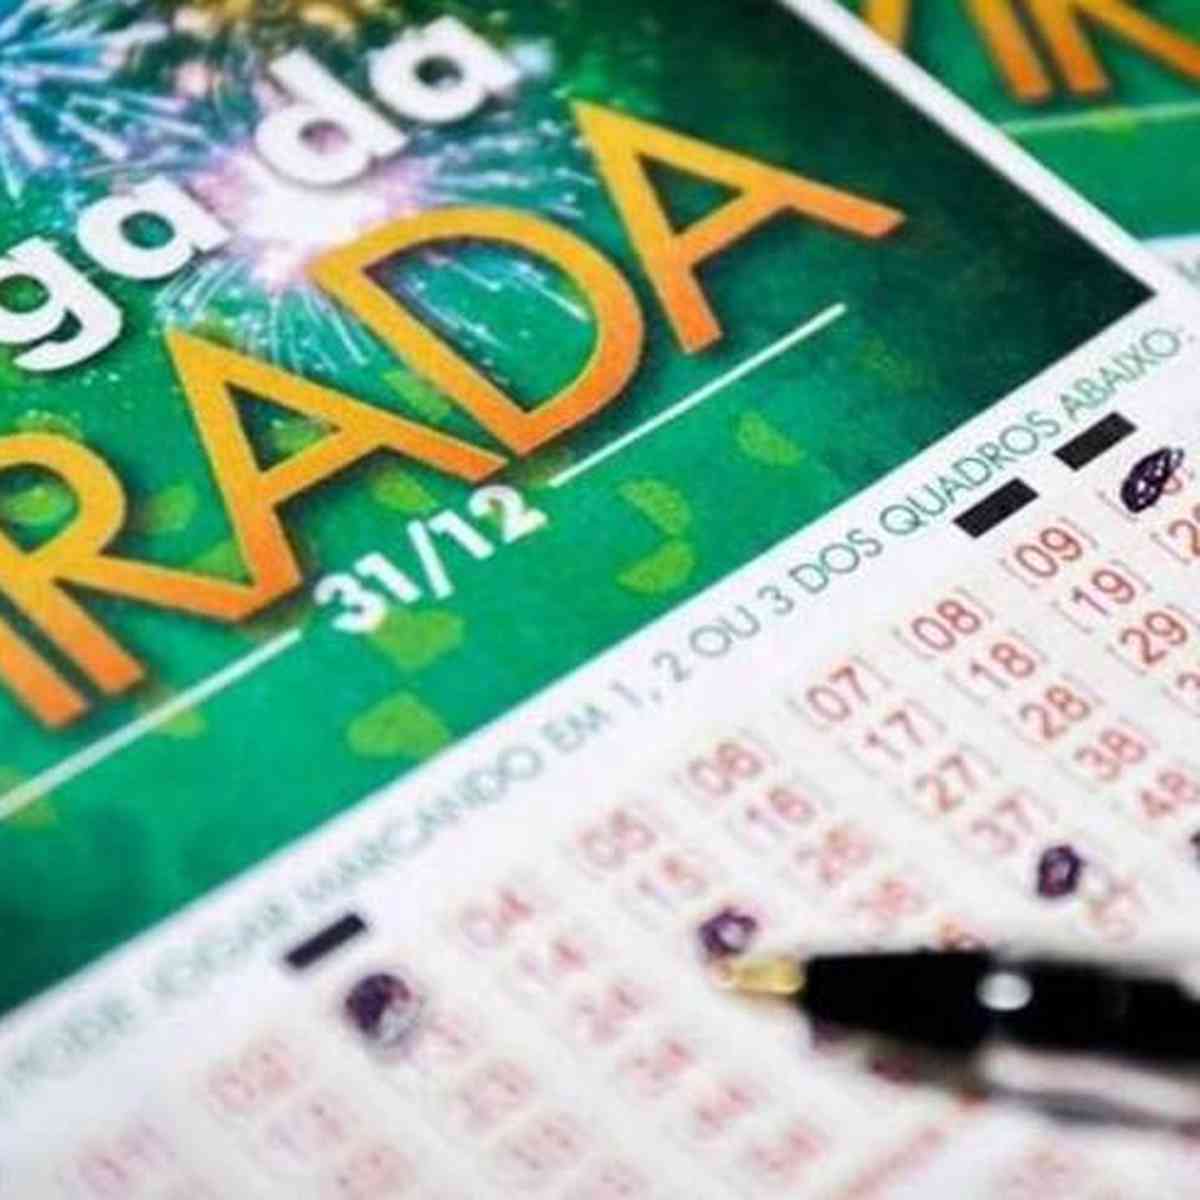 Projeto Mega Sena - Mega da Virada 2017 Bolão contendo 15 números. Boa  aposta ;)